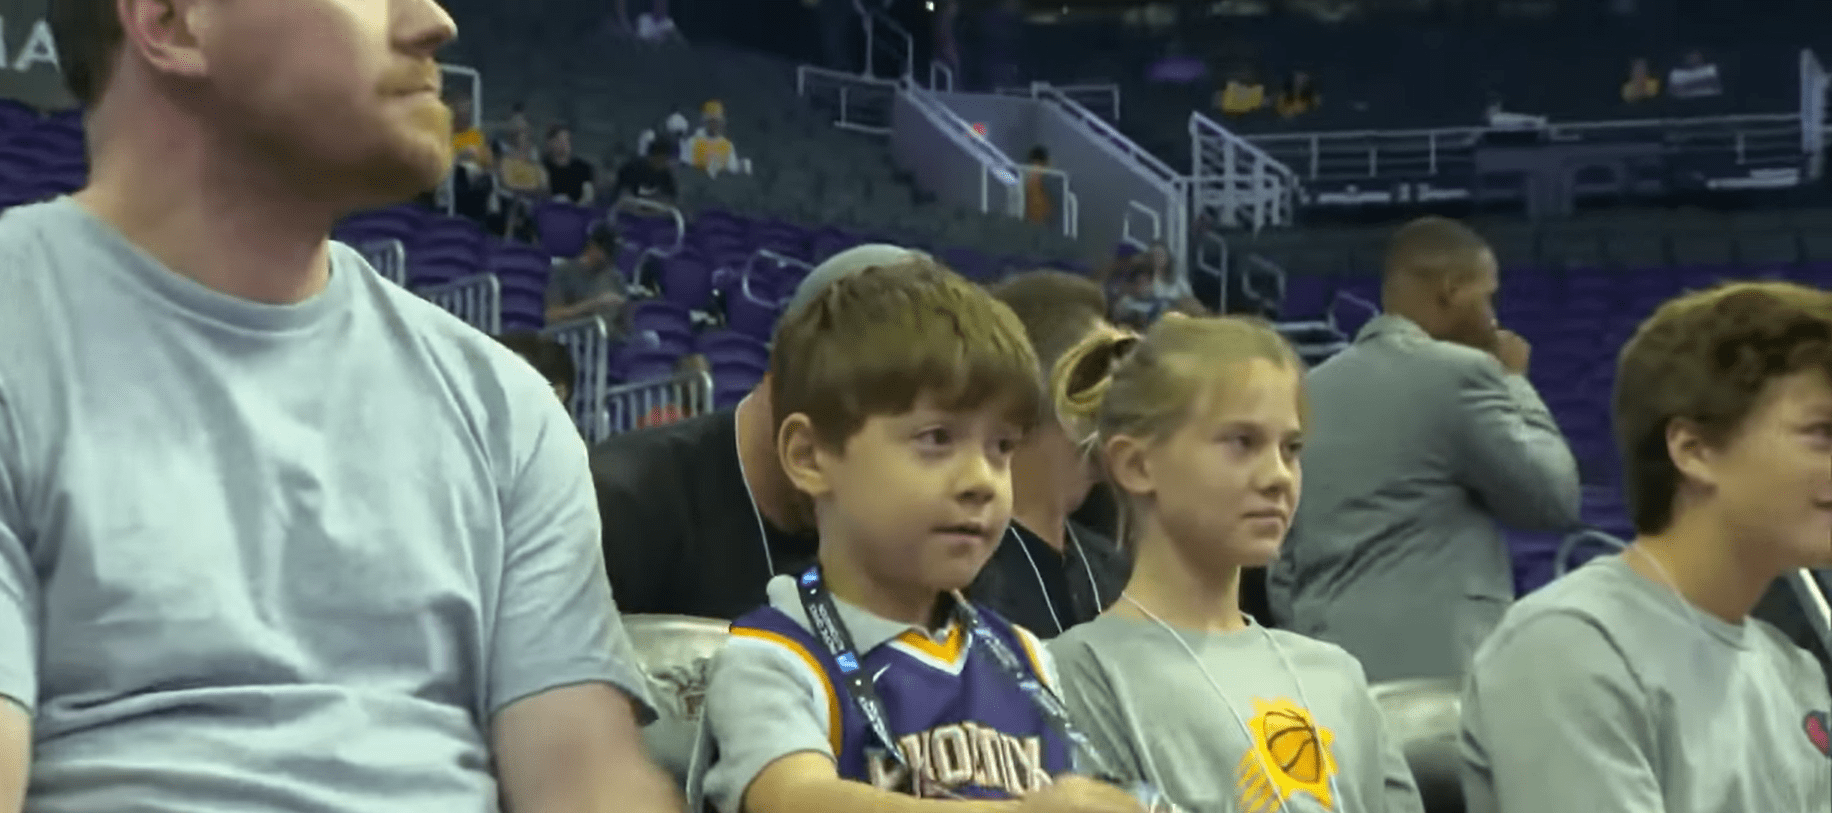 Teddy y su padre, Ted Bollinger, viendo un partido de baloncesto en la NBA de los Phoenix Suns. | Foto: Youtube.com/Inside Edition